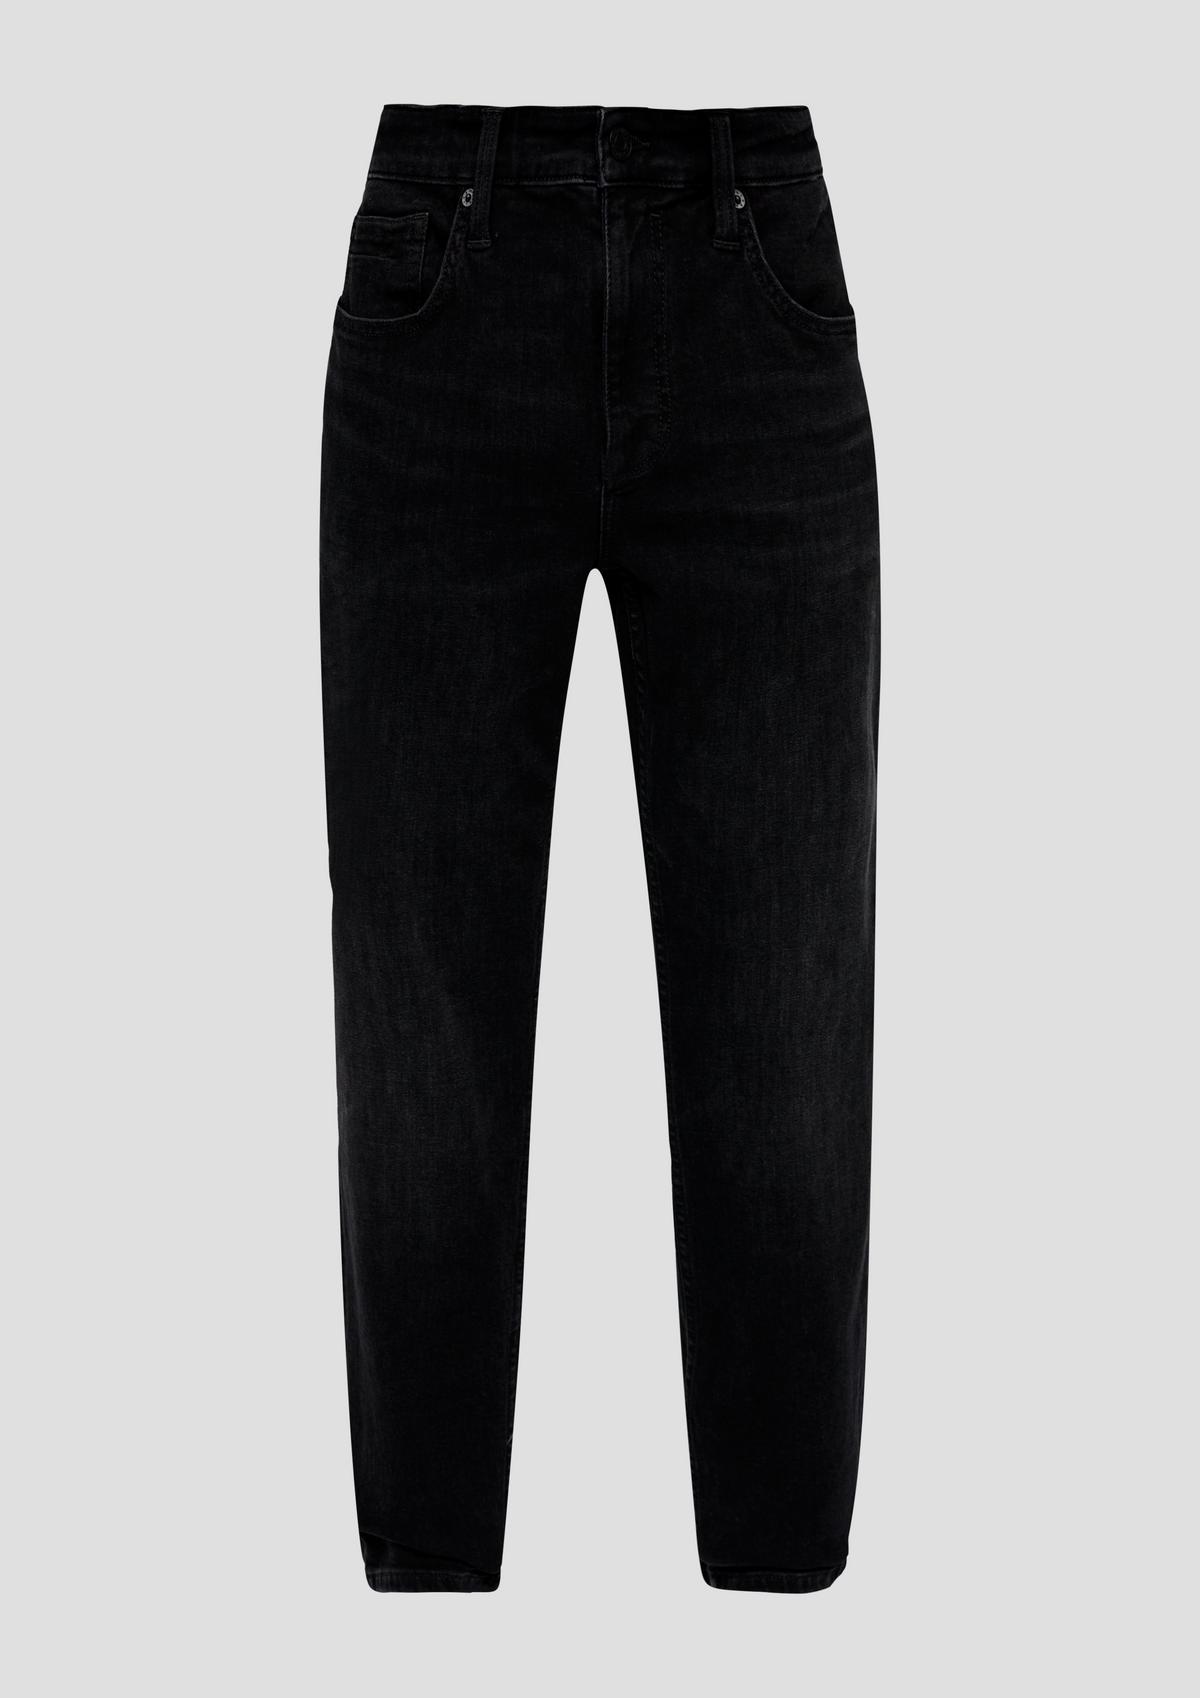 s.Oliver Jeans hlače Nelio/kroj Slim Fit/Mid Rise/Slim Leg/našitek